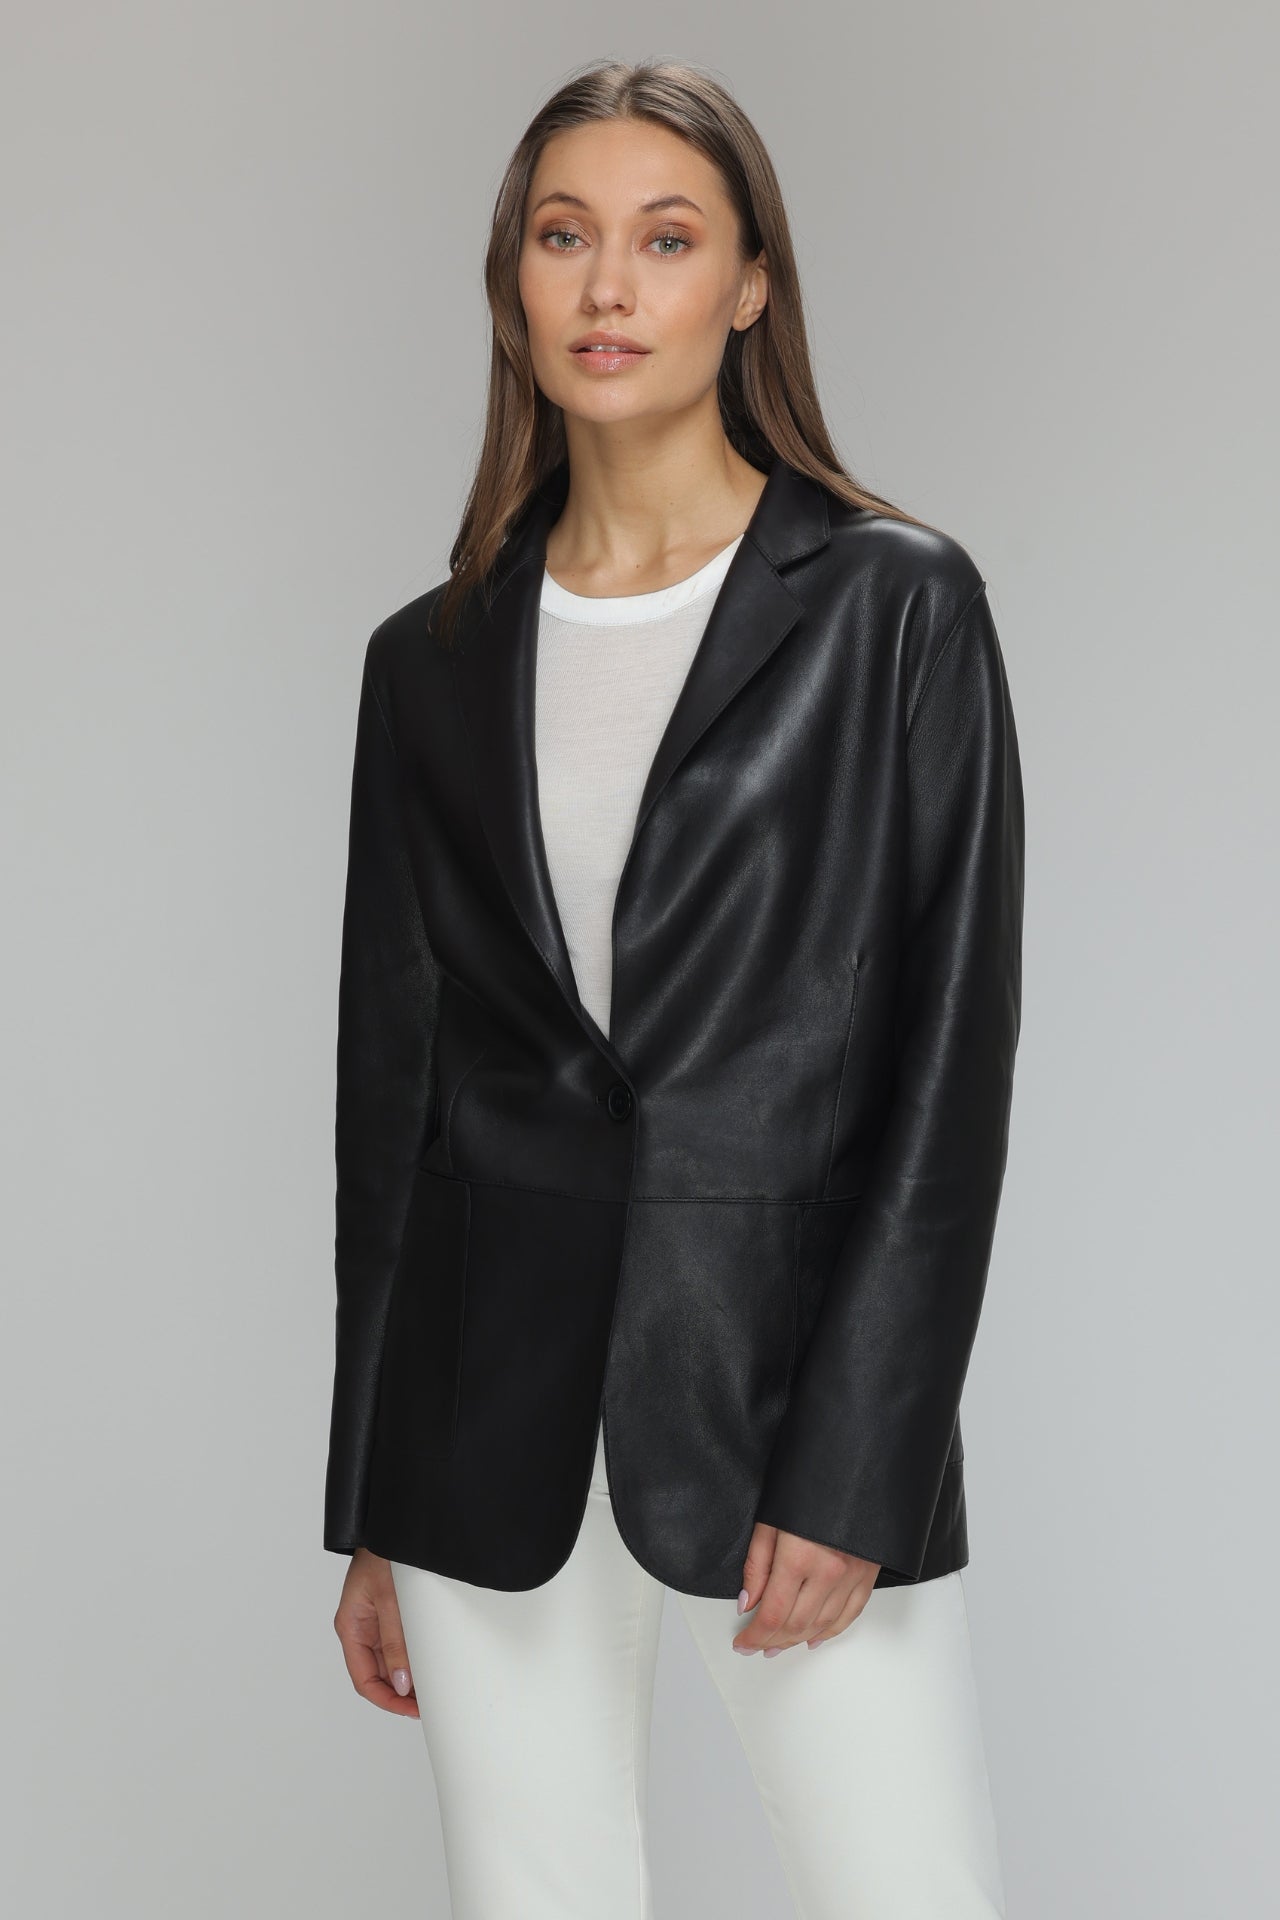 KAYLEE Genuine Leather Blazer – Danier